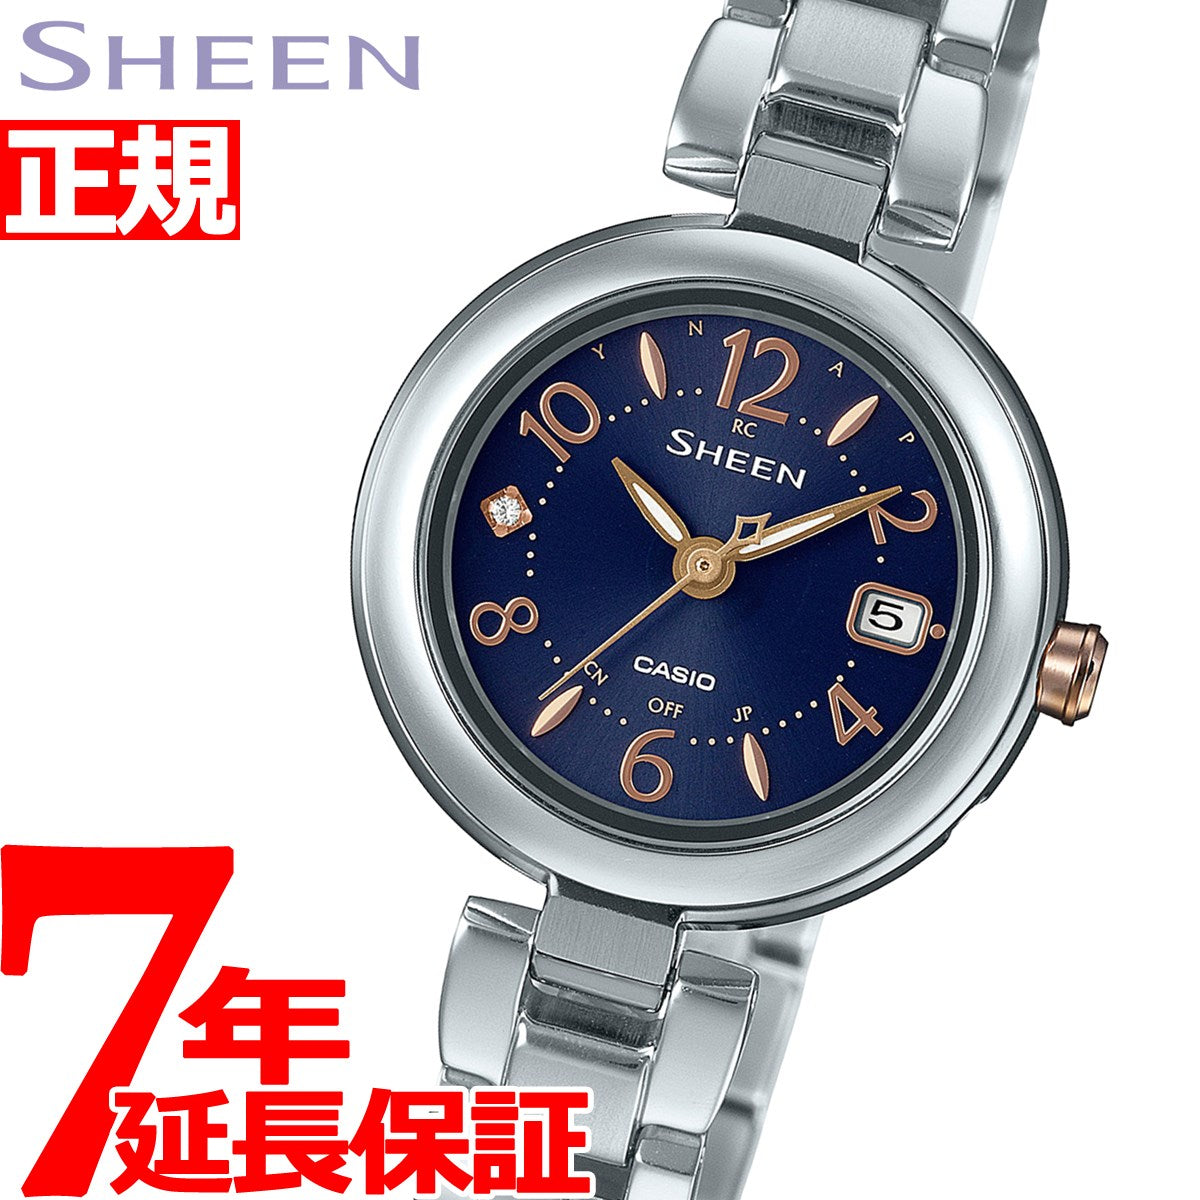 カシオ シーン 腕時計 レディース 電波ソーラー SHW-7100TD-2AJF ...